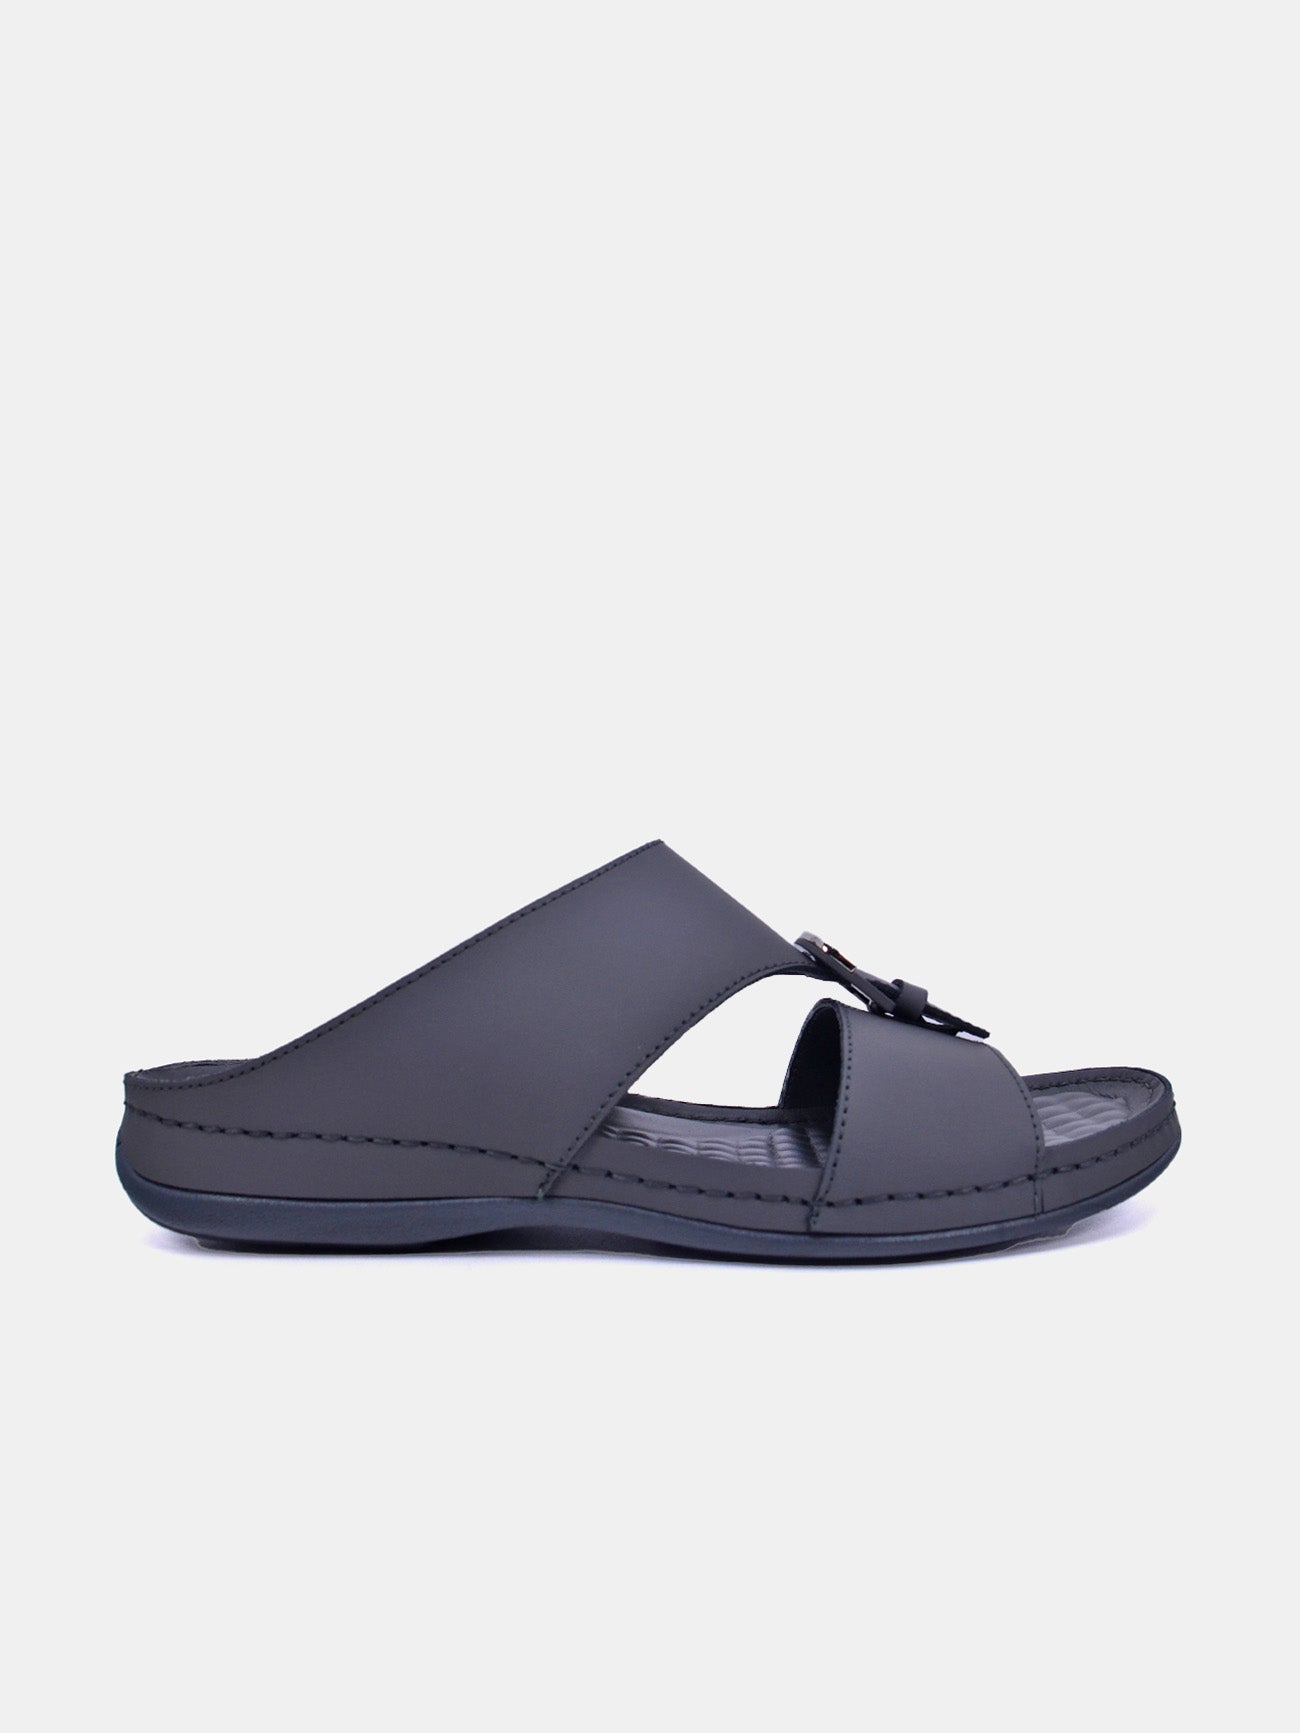 Al Maidan K-792 Men's Arabic Sandals #color_Grey